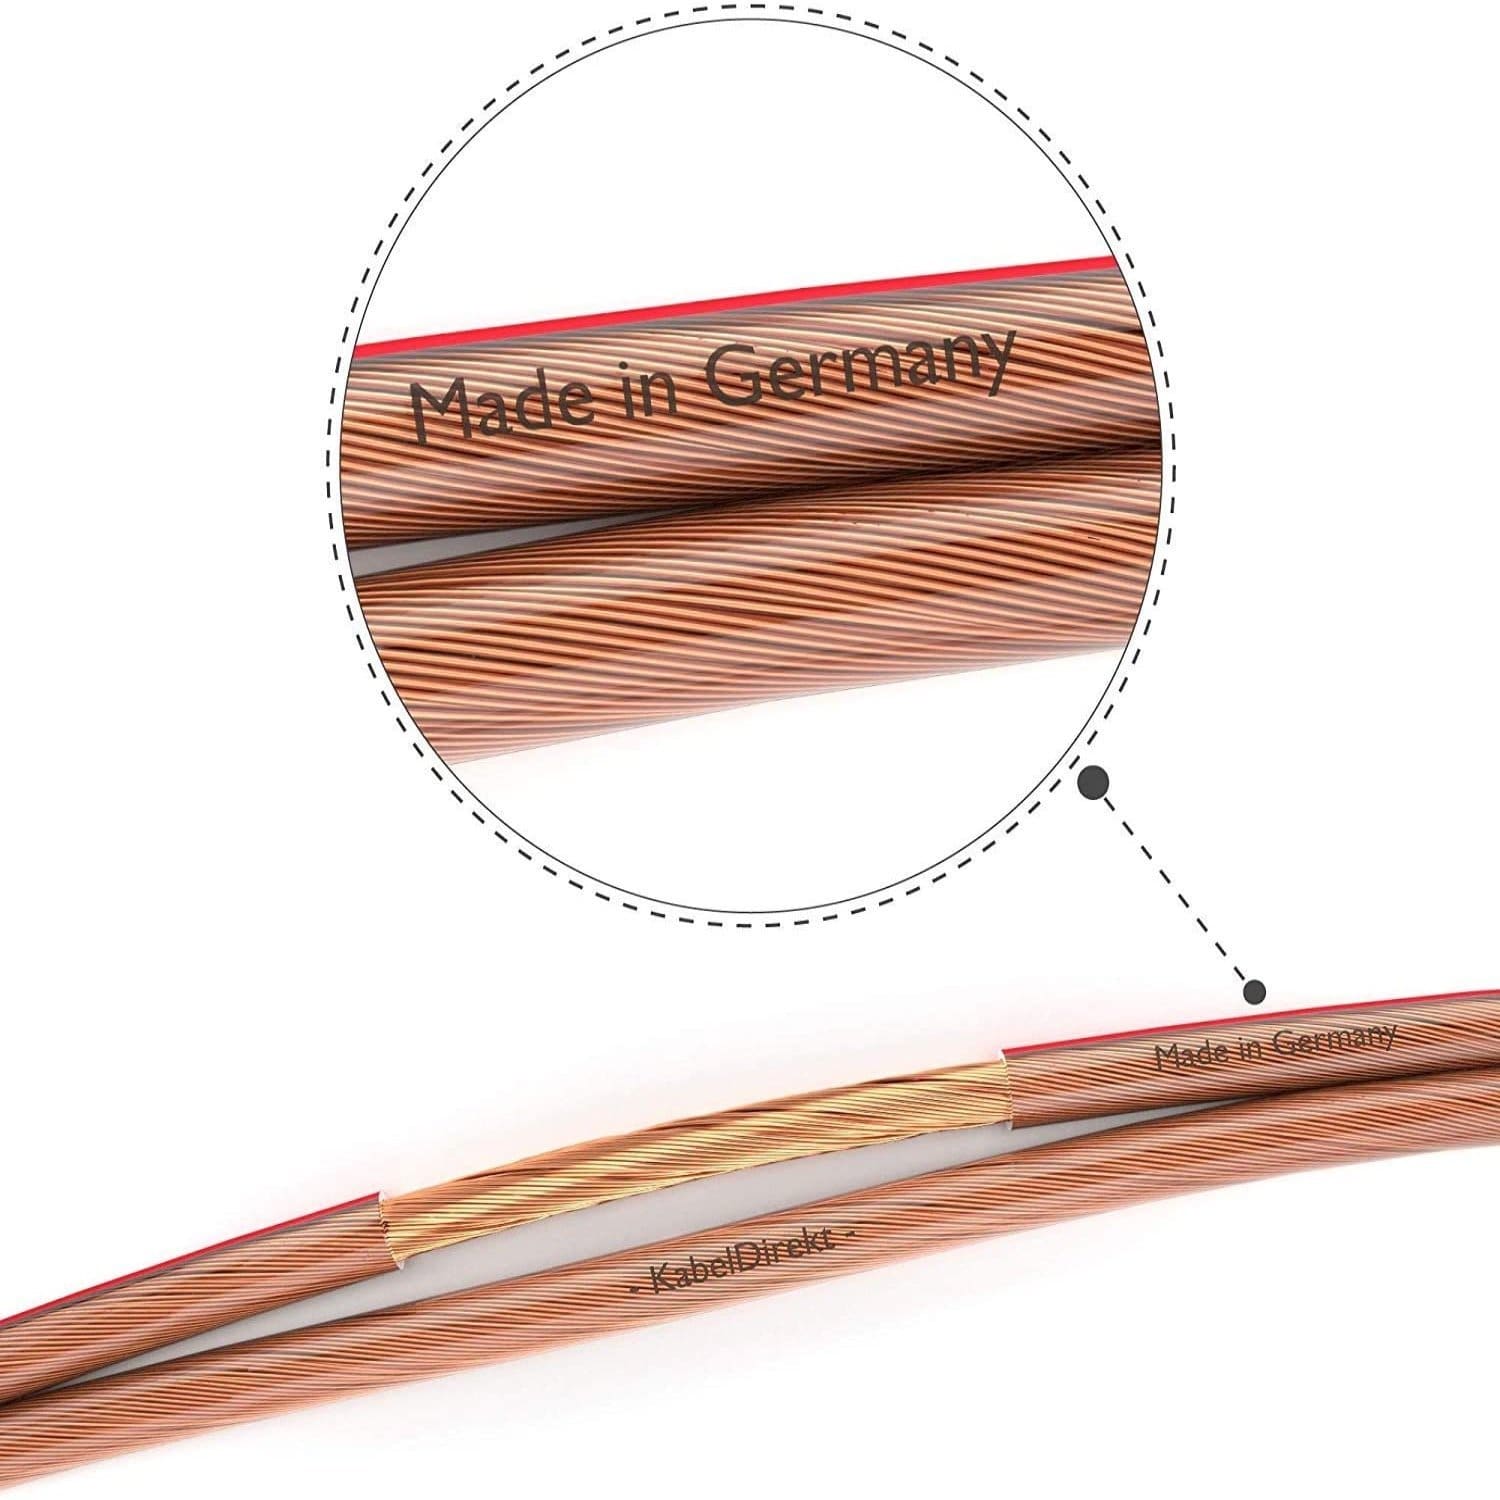 Lautsprecherkabel aus reinem Kupfer - Made in Germany » KabelDirekt